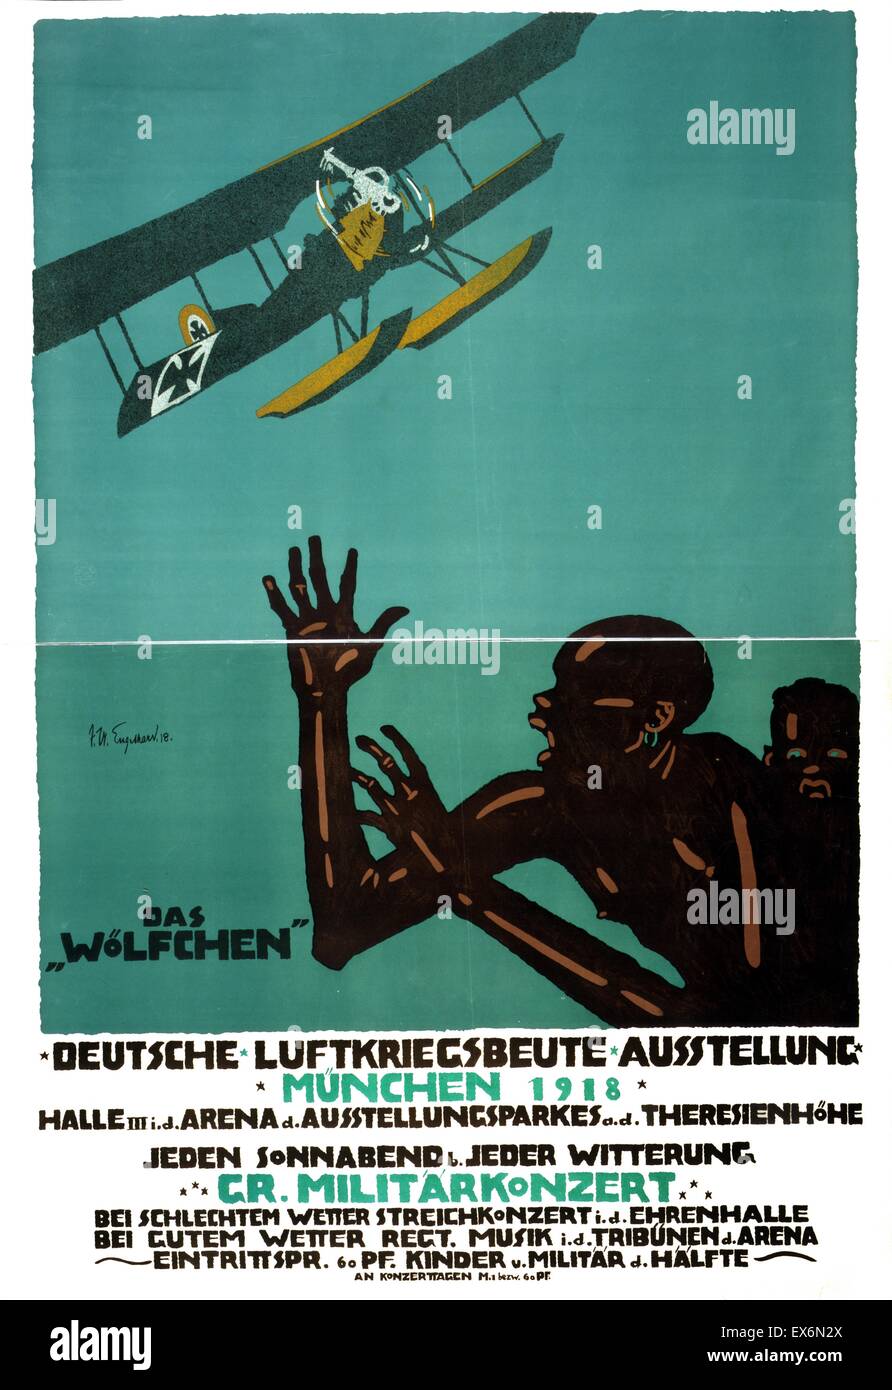 Das Poster zeigt einen deutsche Land/Meer Doppeldecker, der "Wolfschen", fliegen über Afrikaner, die in Angst kauern sind. Der Text enthält Informationen über eine Ausstellung in München von erfassten Krieg Gegenständen. Vom Jahre 1918 Stockfoto